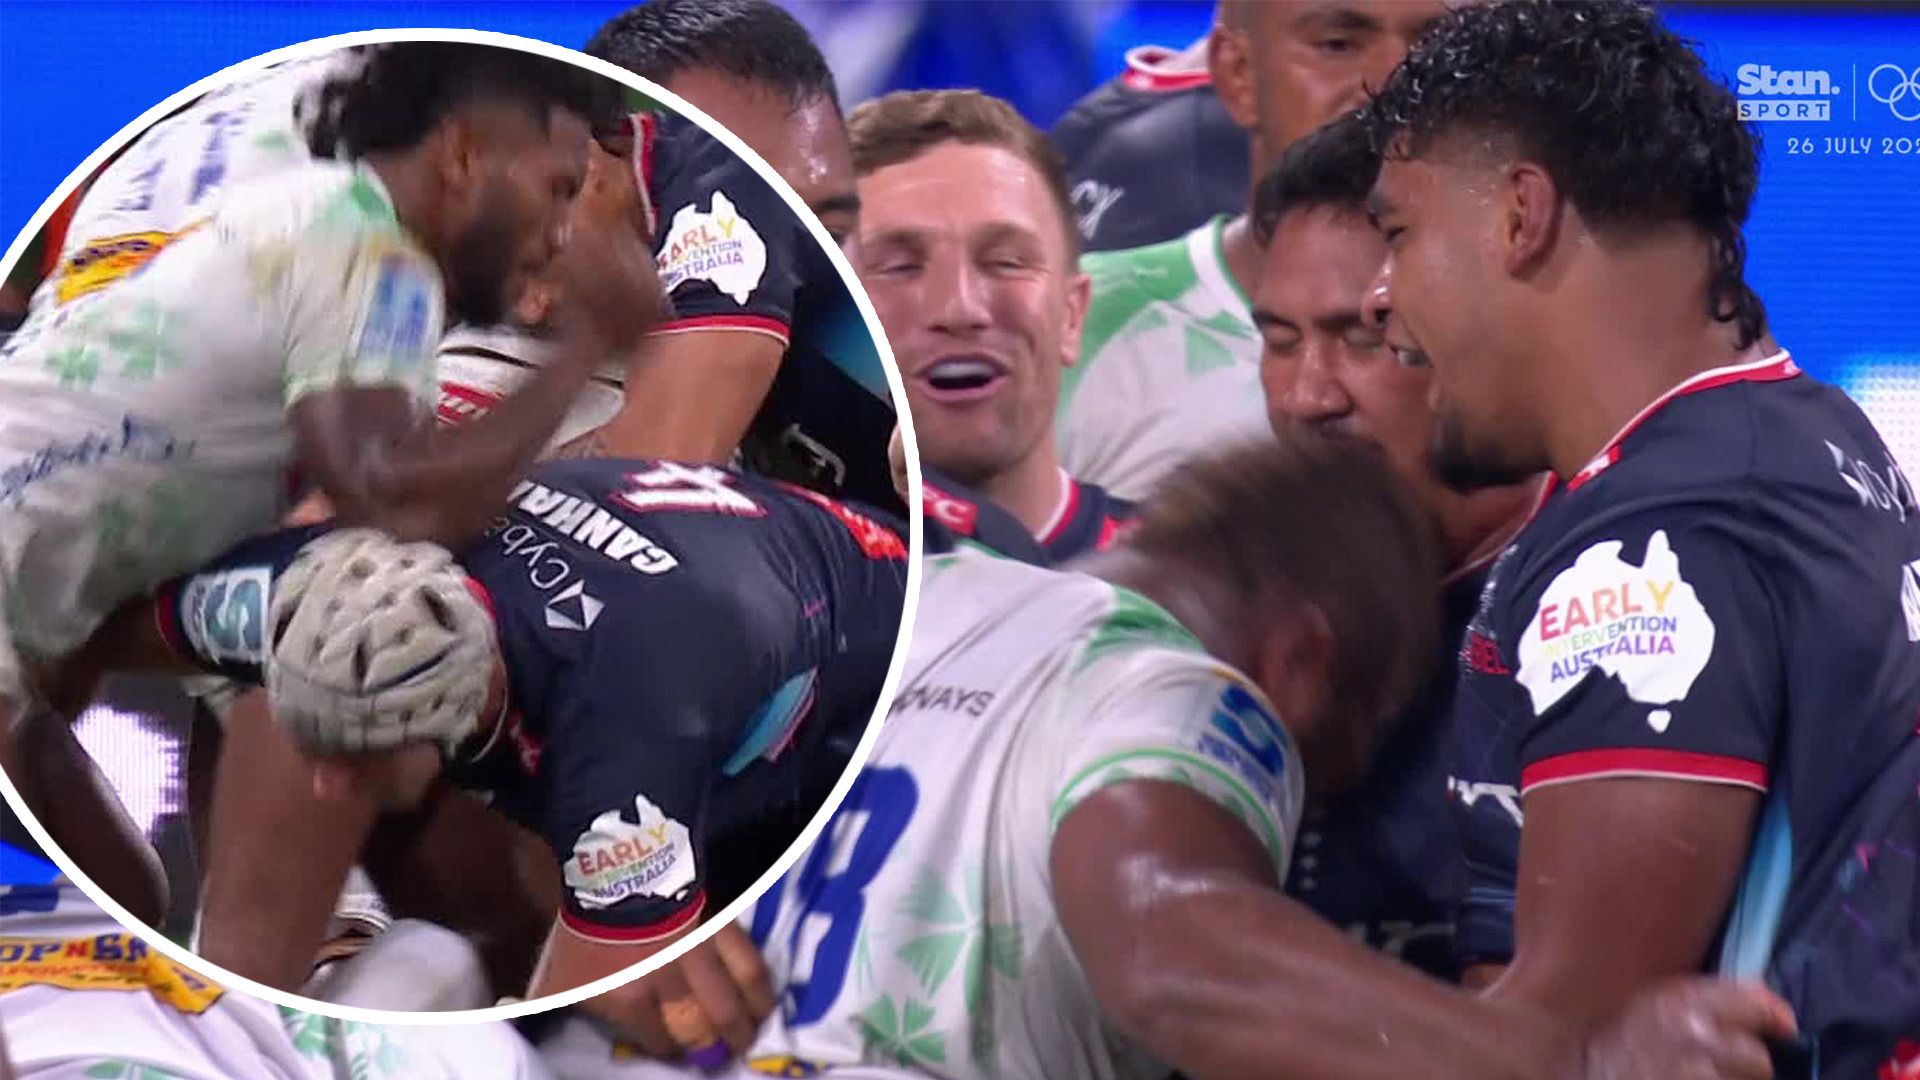 Noticias del Super Rugby del Pacífico | Drua fiyiano expulsado en dos ocasiones en un colapso total contra Melbourne Rebels